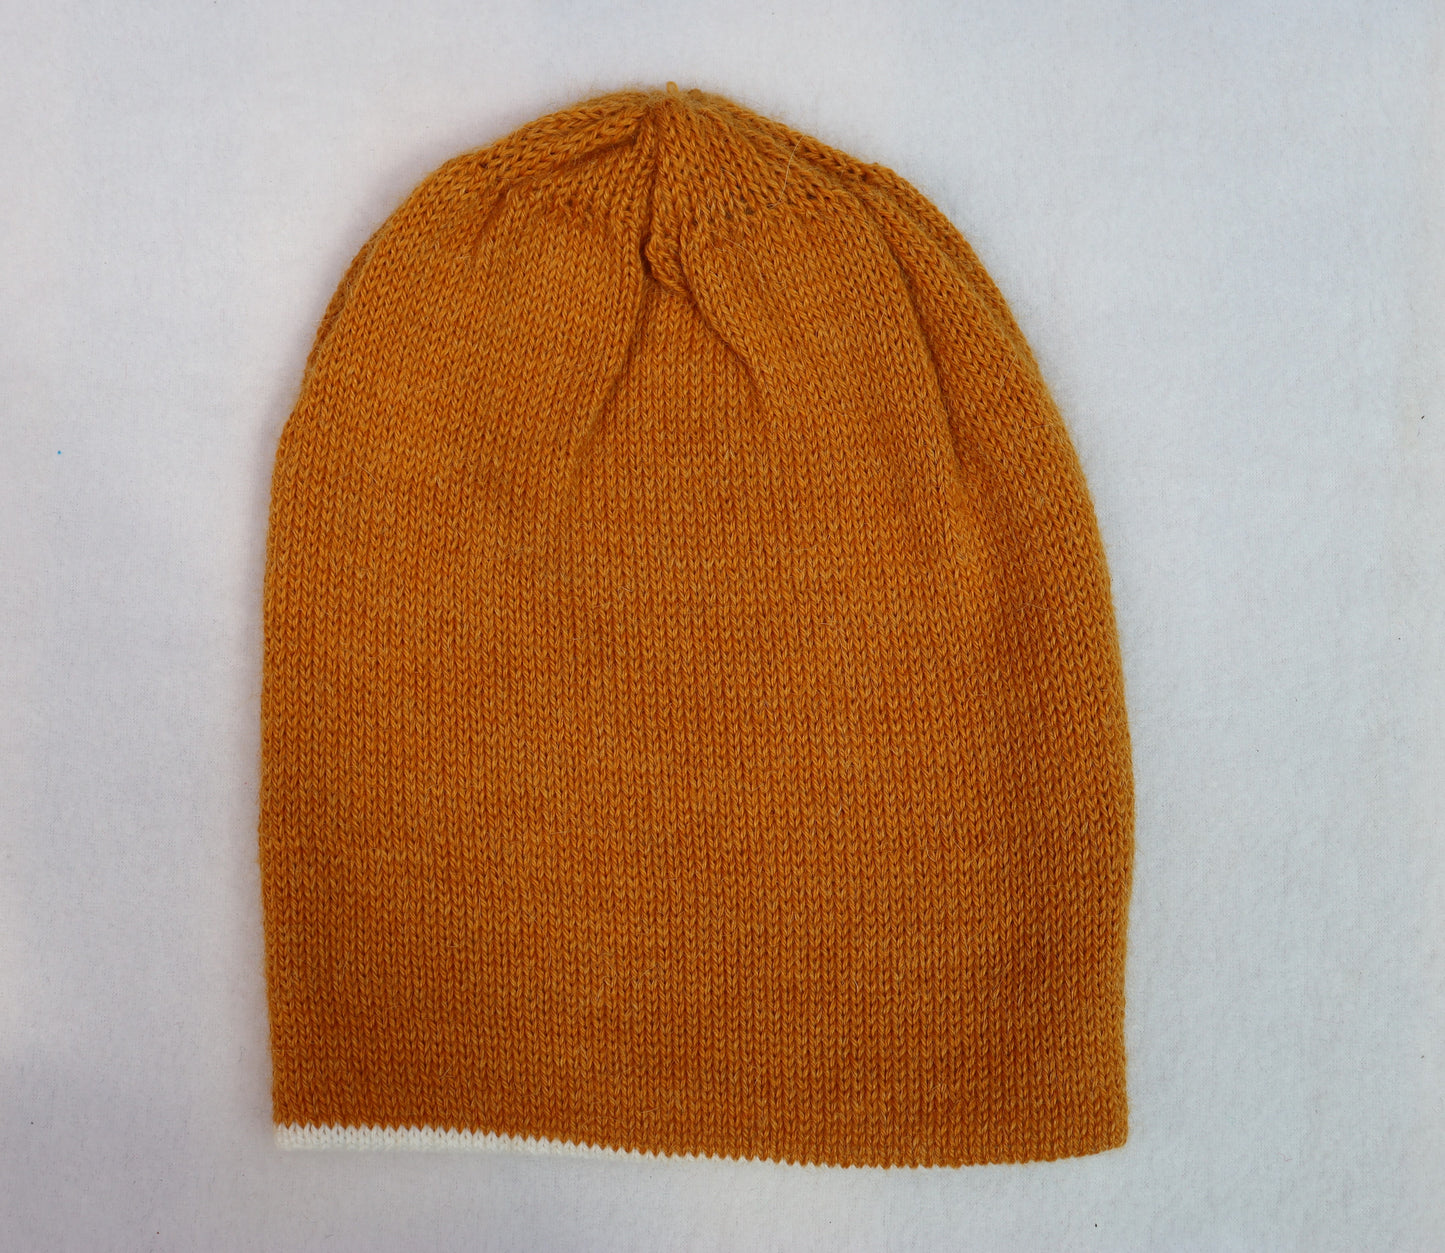 CH.203-Warm Hat